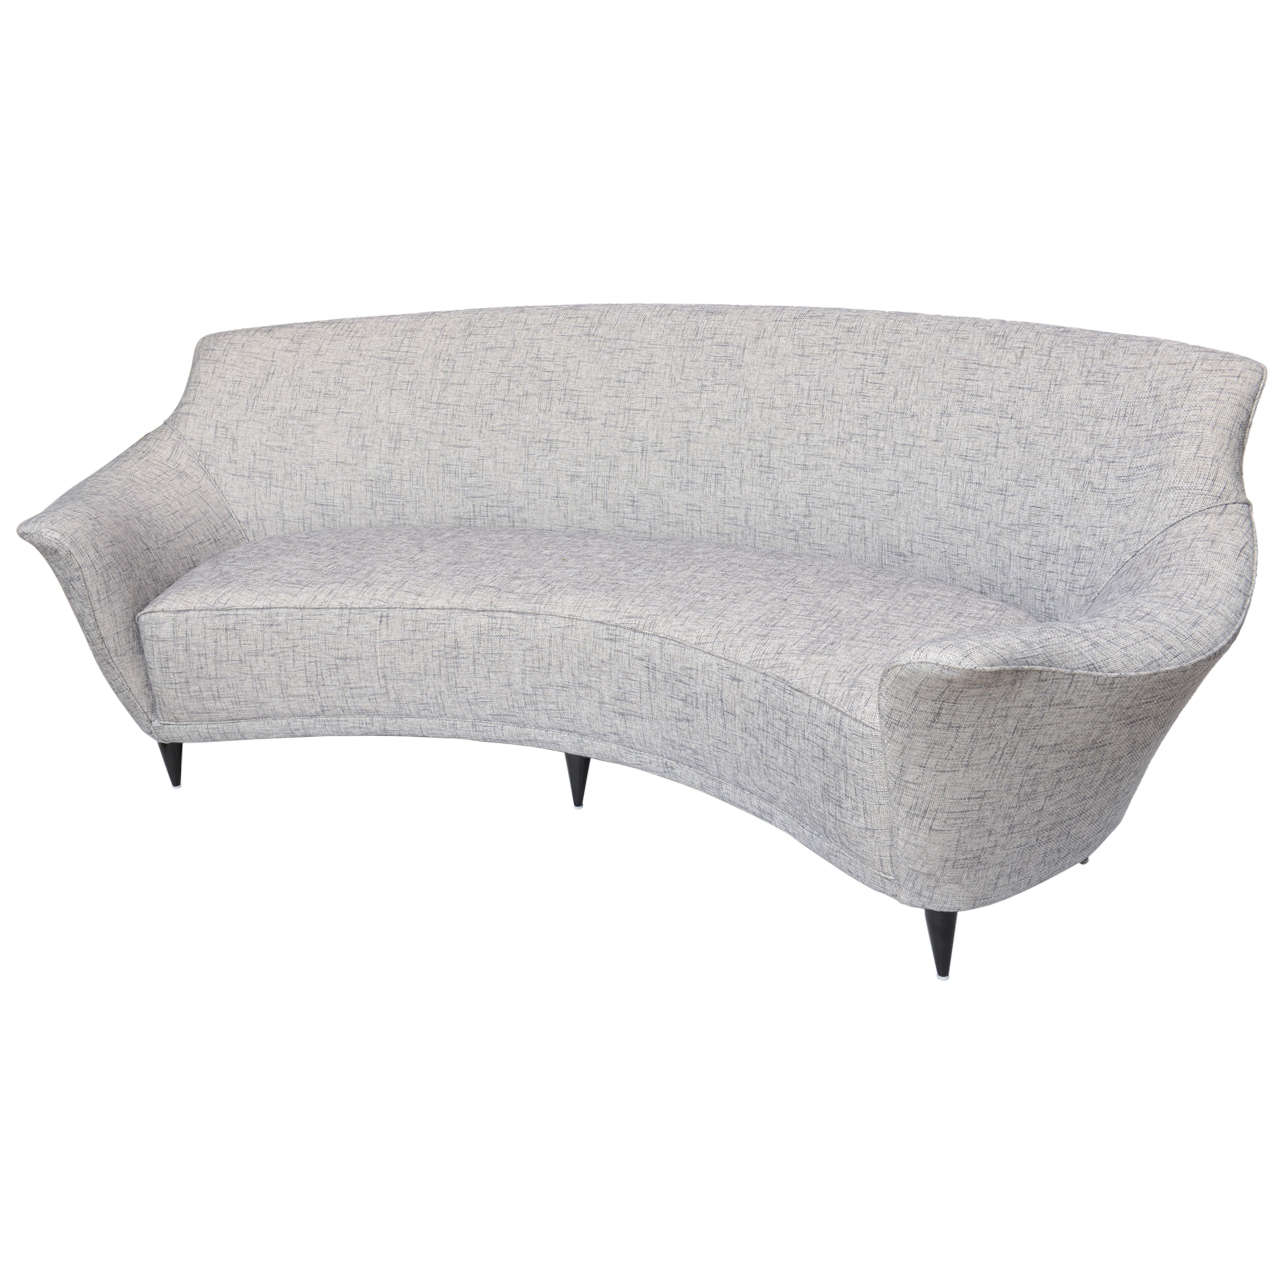 Sofa mit geschwungener Rückenlehne von Ico Parisi, hergestellt von Ariberto Colombo